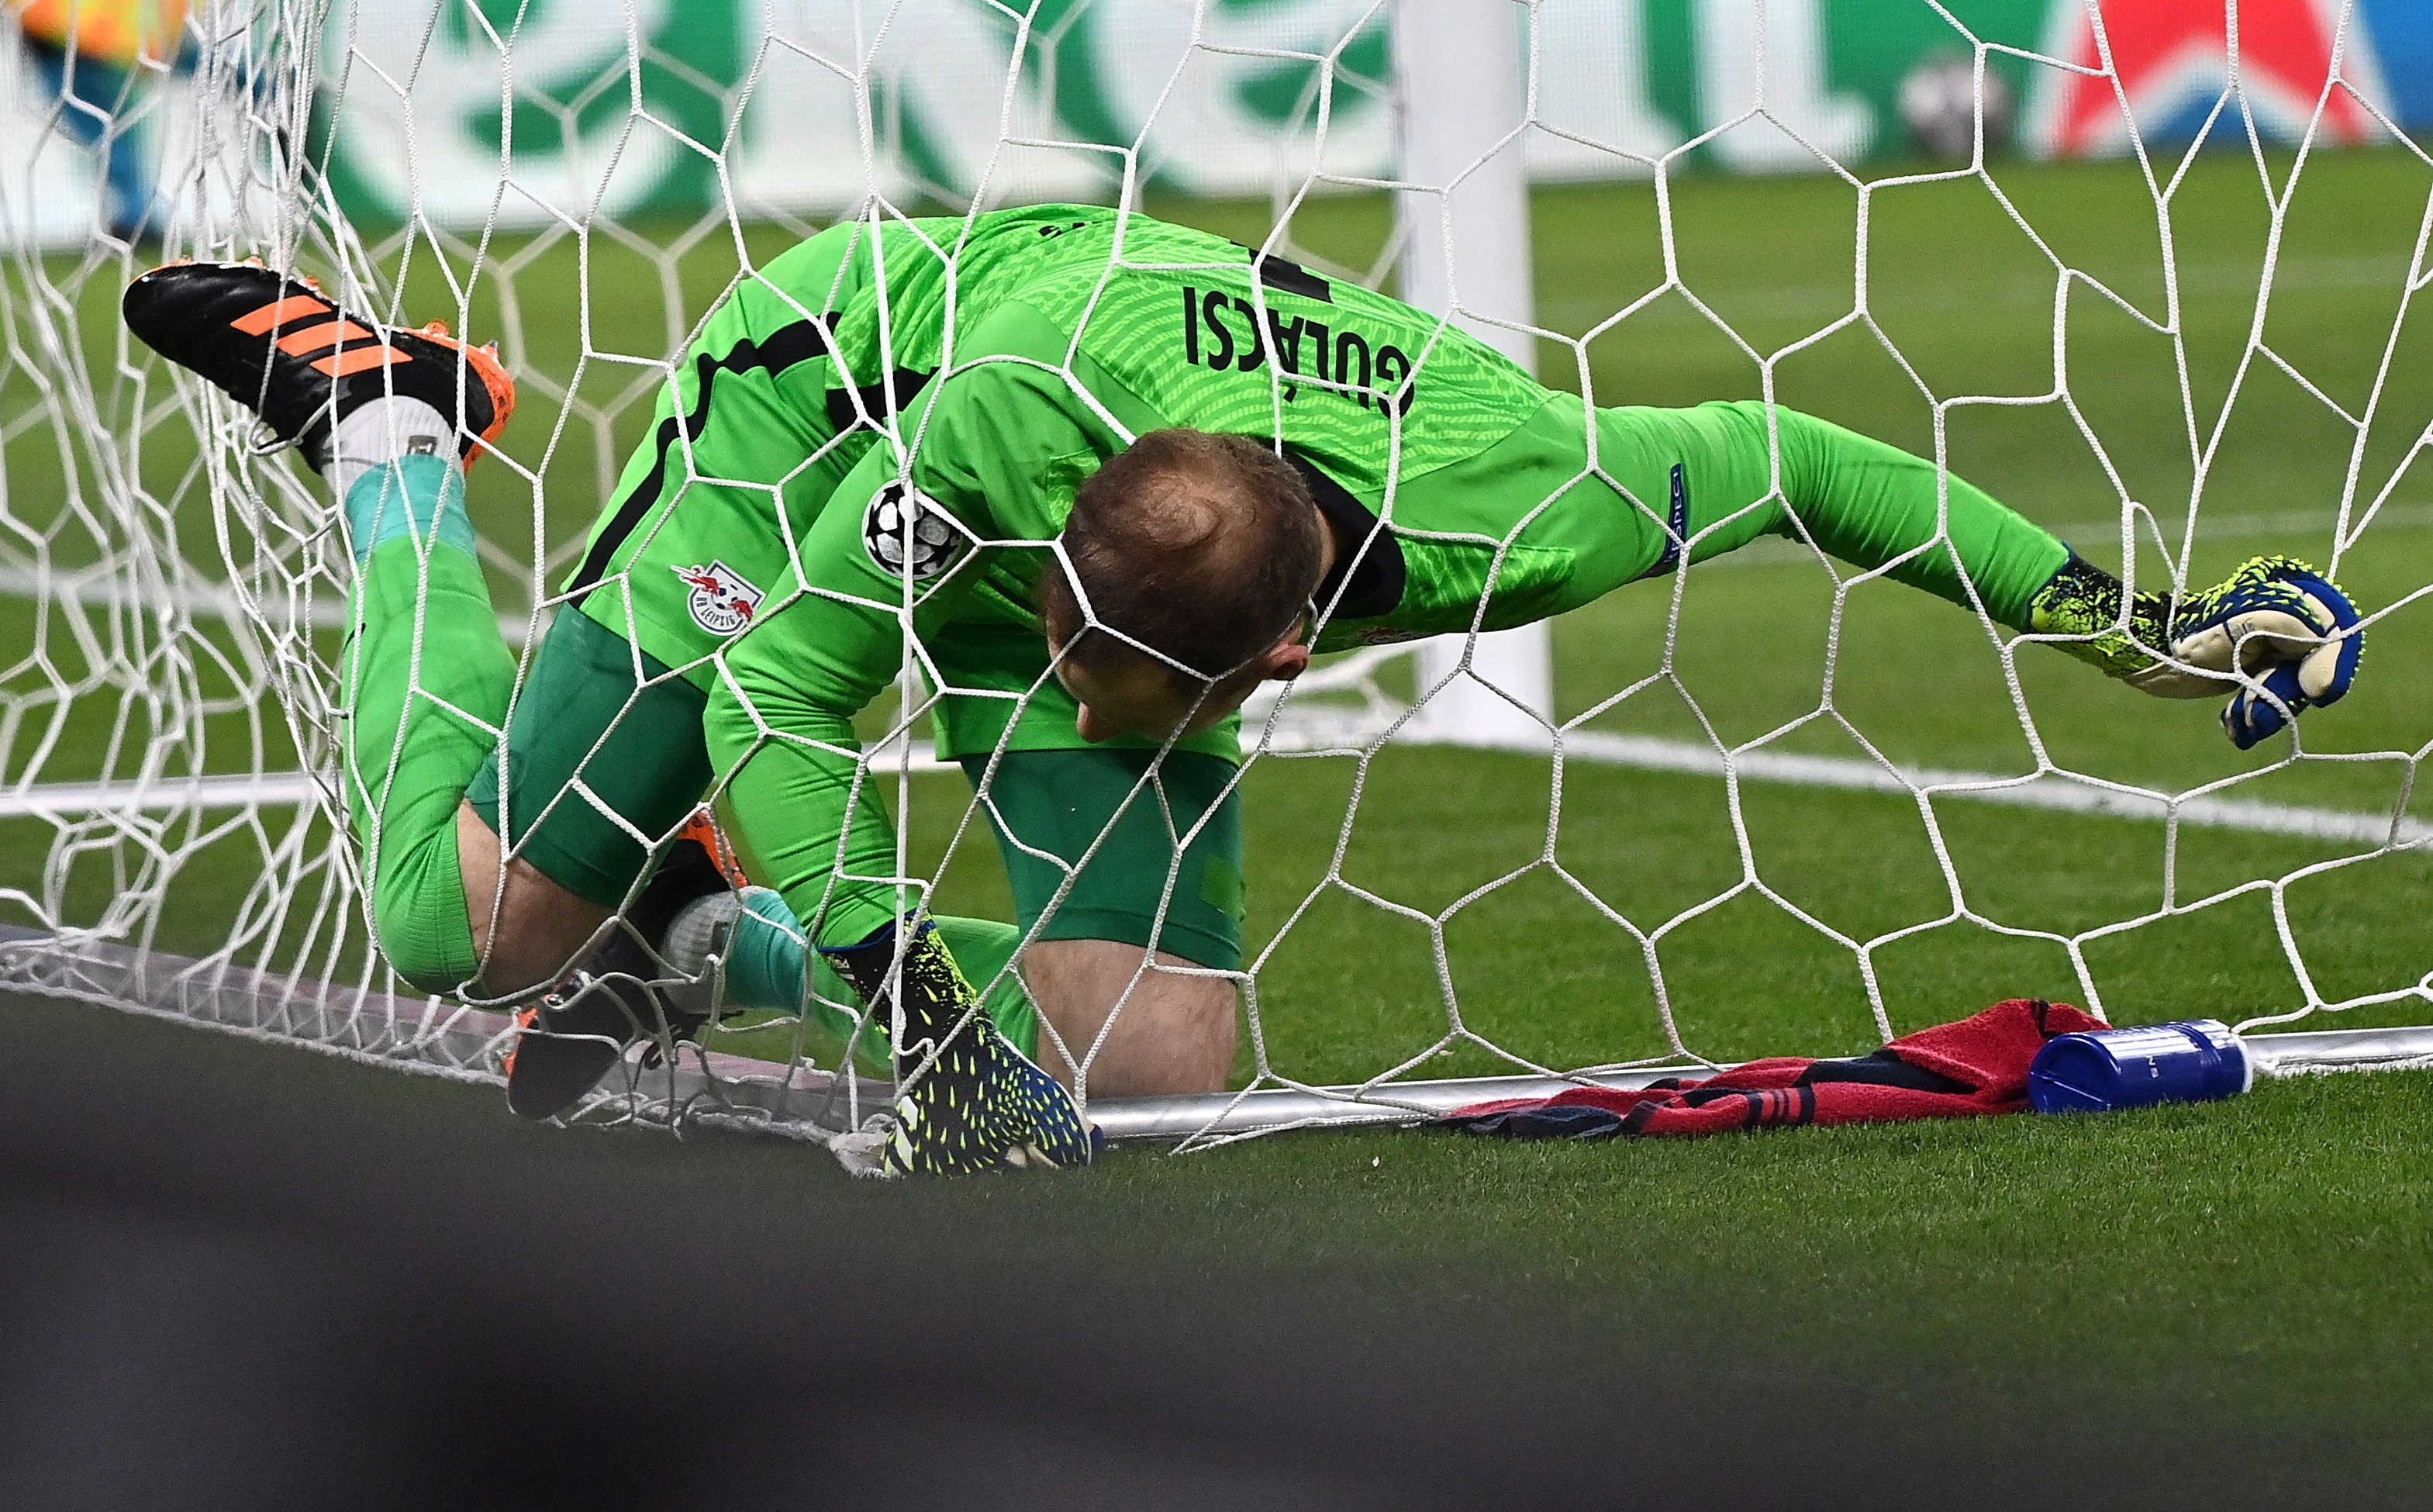 El resúmen del segundo tiempo del Leipzig: dos goles regalados y sin poder reaccionar (Foto: EFE)
